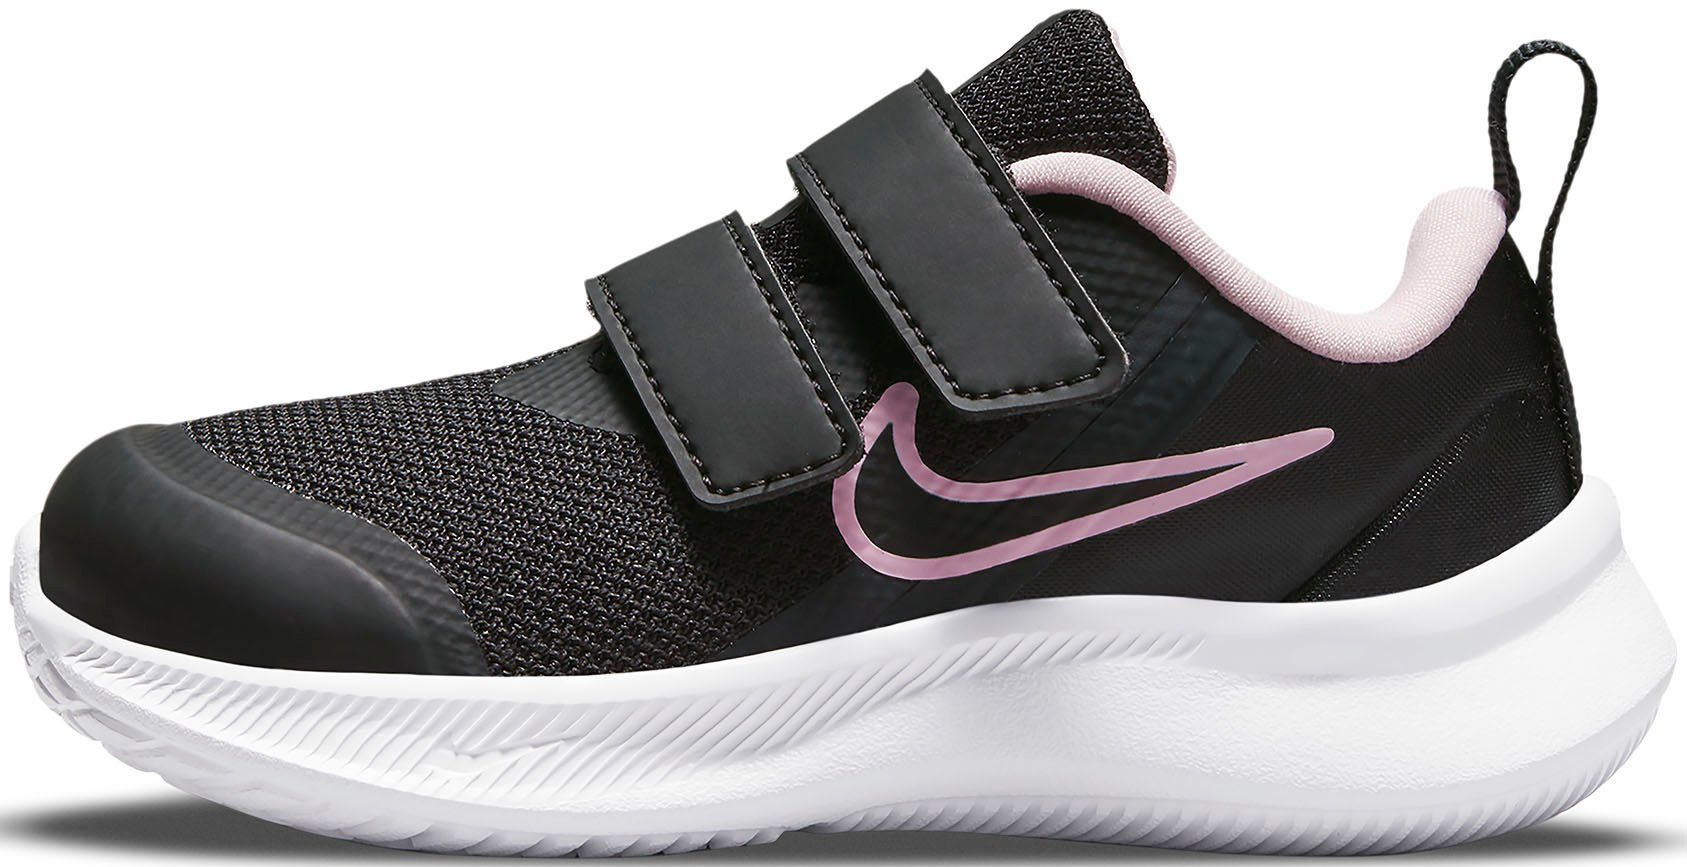 STAR mit 3 (TD) Nike RUNNER schwarz-rosa Klettverschluss Laufschuh